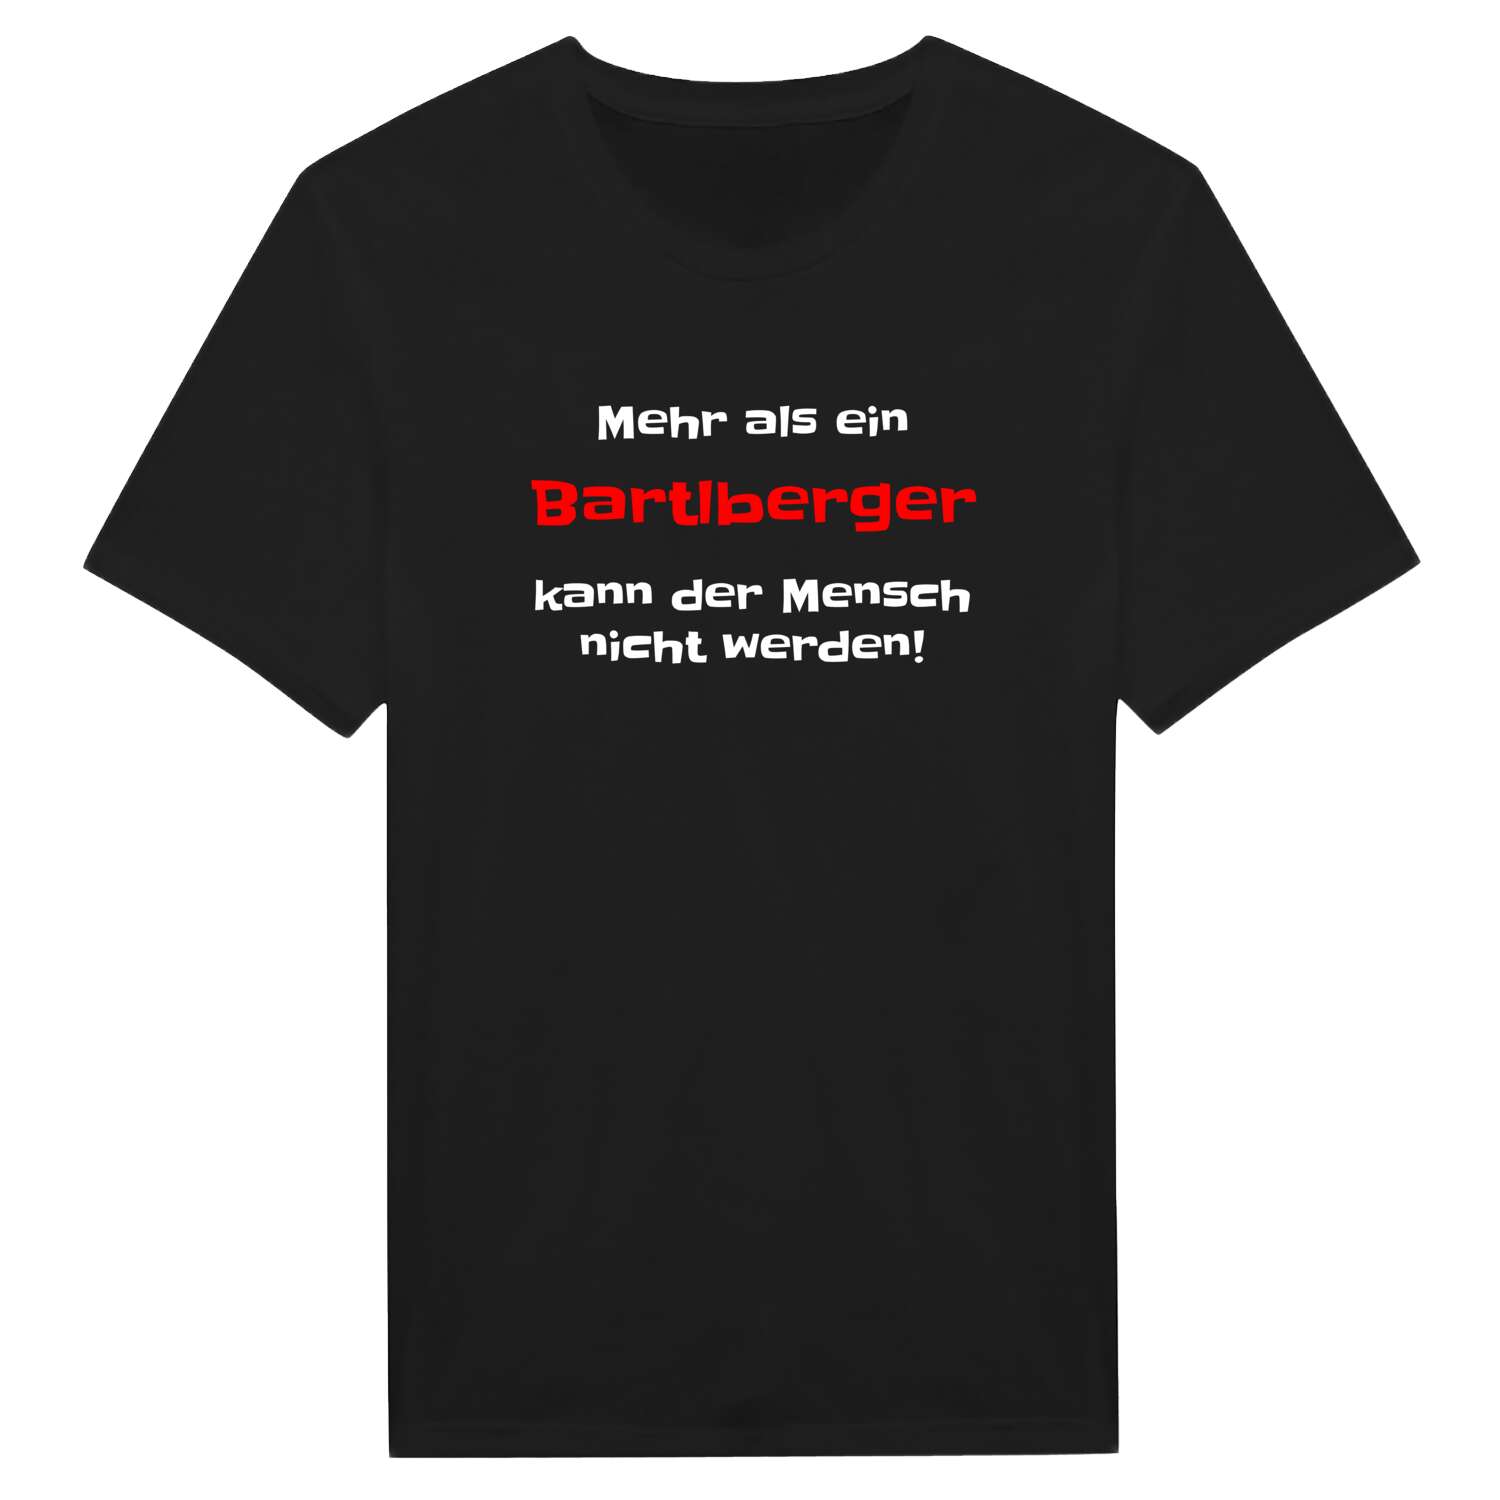 Bartlberg T-Shirt »Mehr als ein«